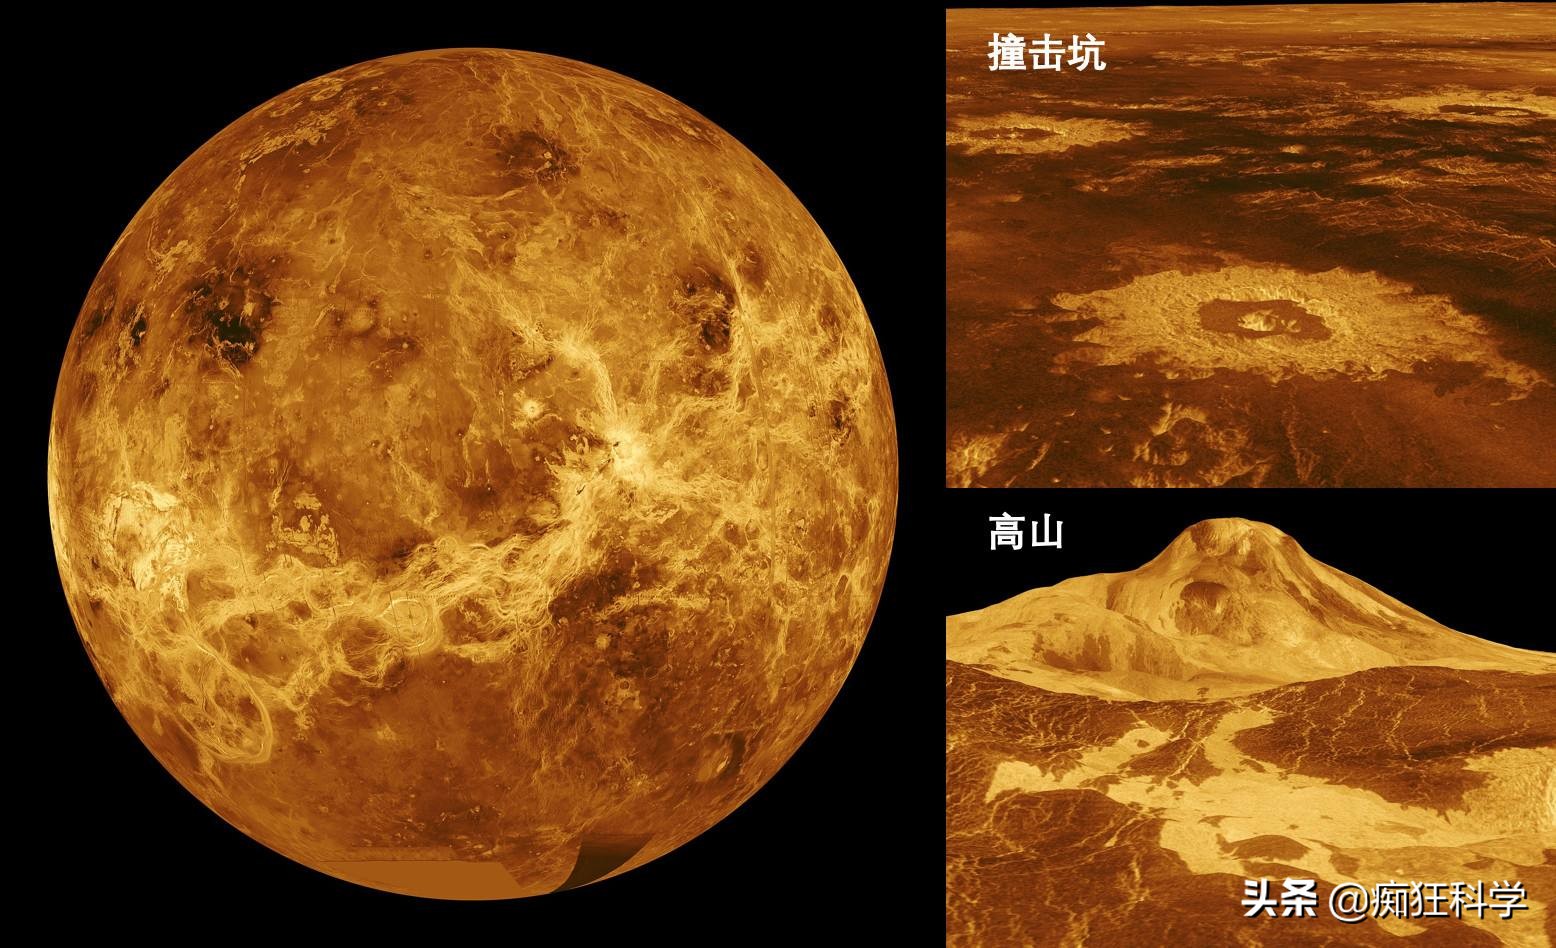 科学家认为金星上没有生命，而木星云中存在奇异的生命形态